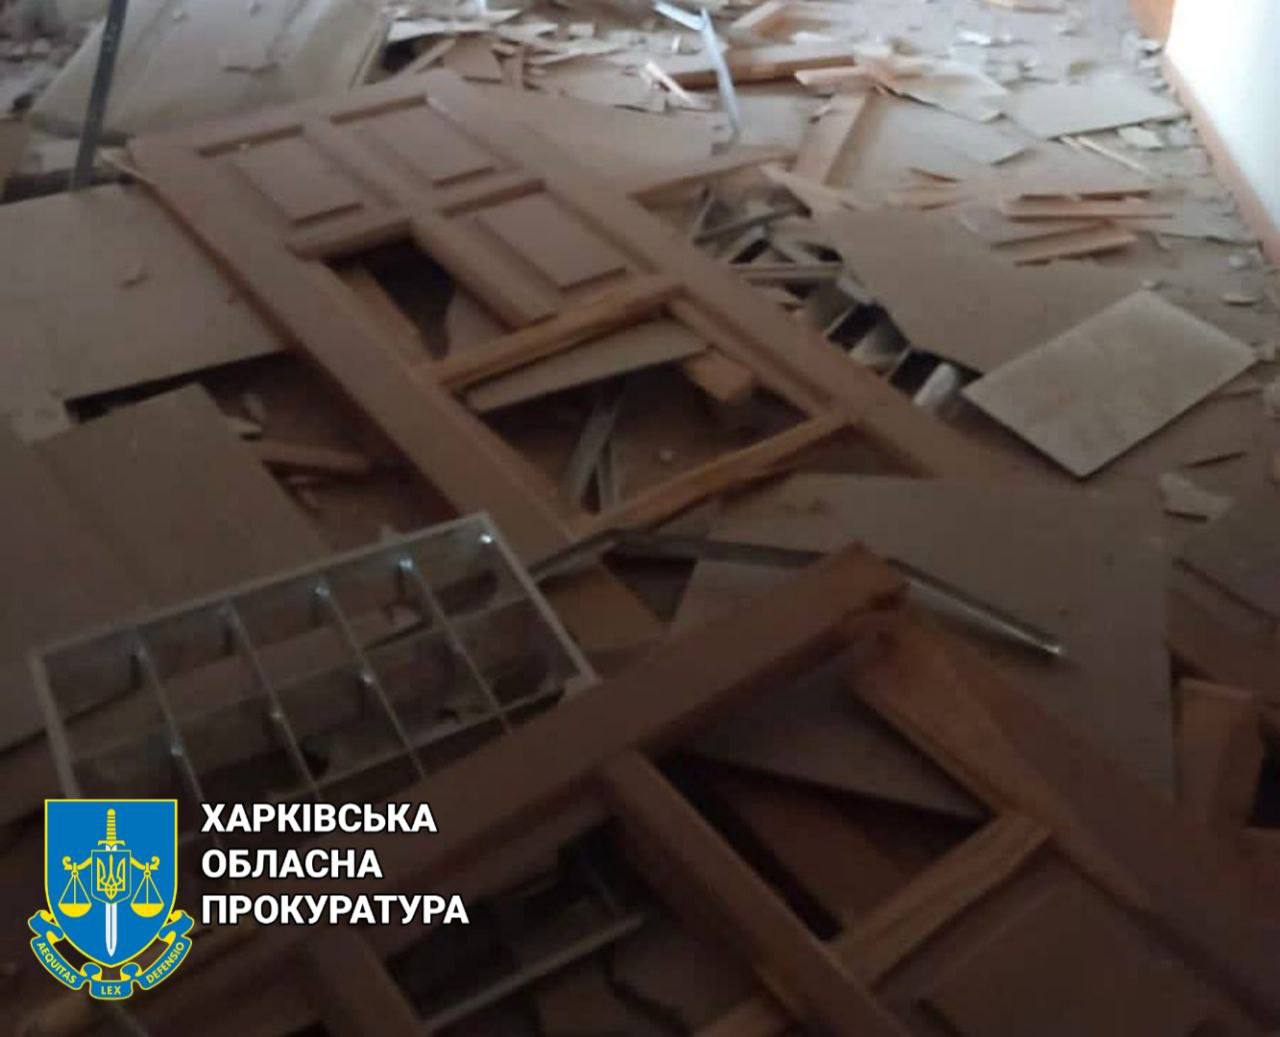 Один из харьковских вузов серьезно пострадал при обстреле Харькова в ночь на 12 августа 2022 г.